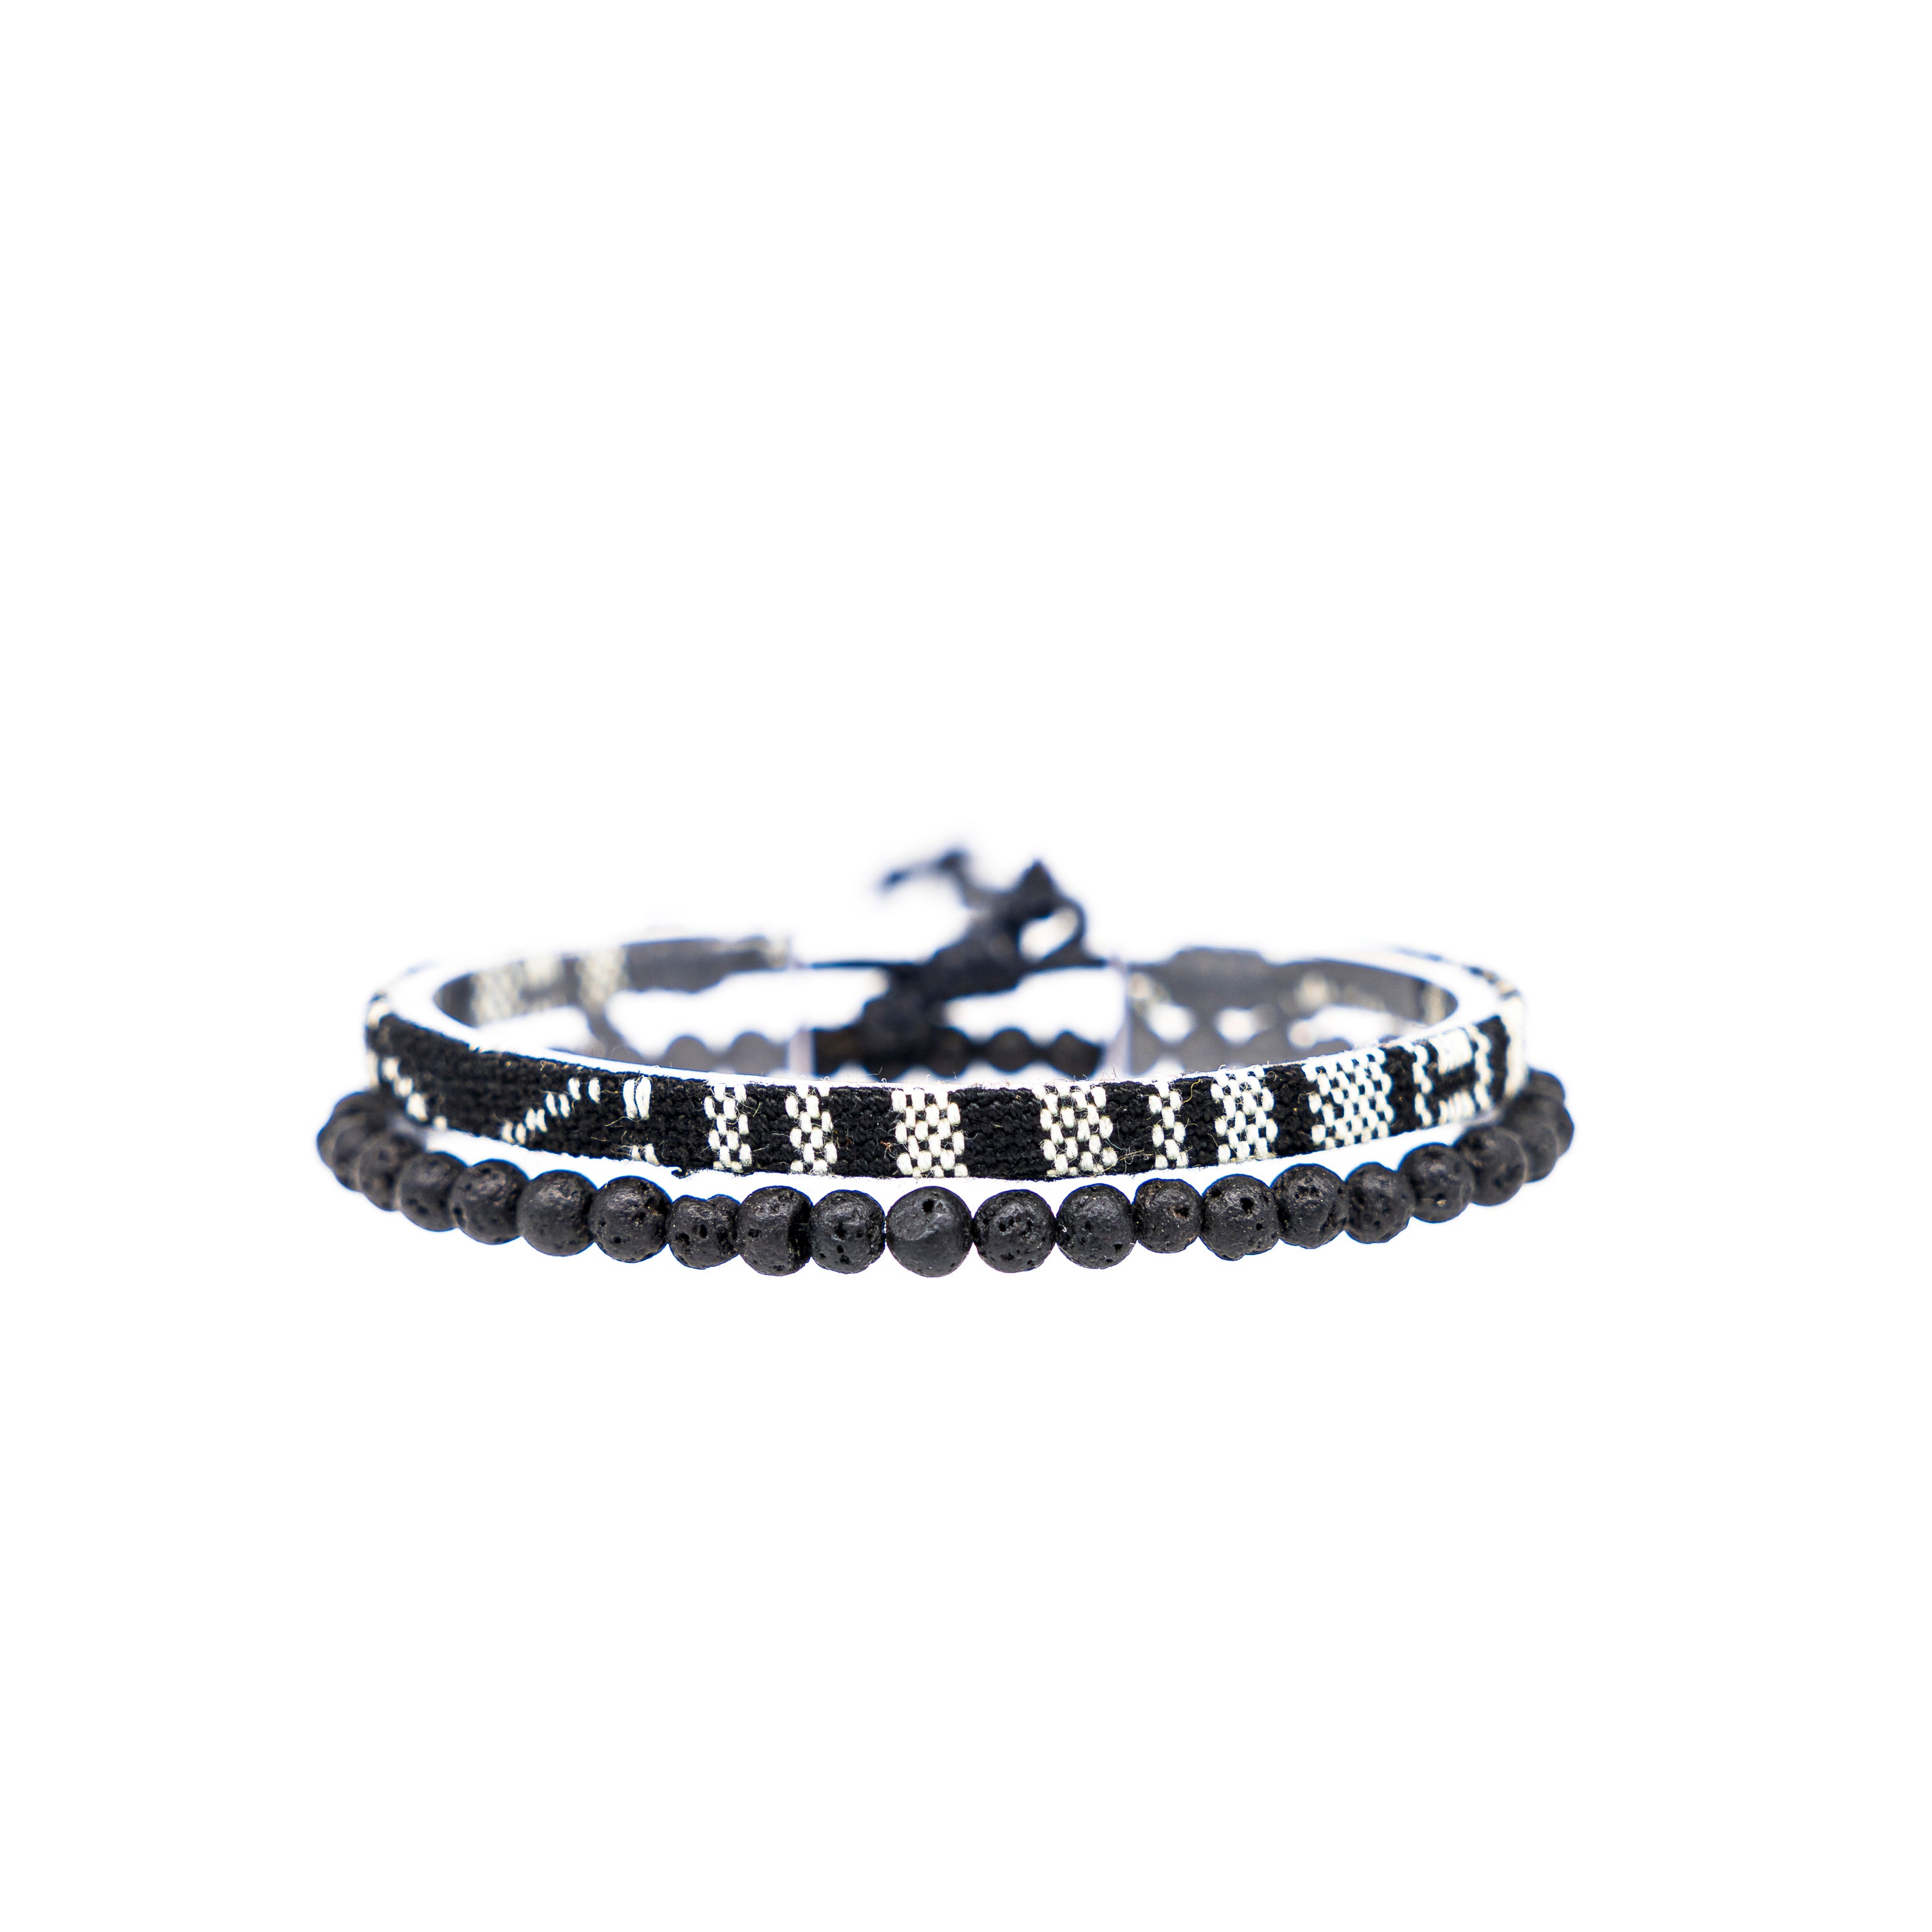 2x Boho Surfer Bracelet Men - Black + Lava Beads